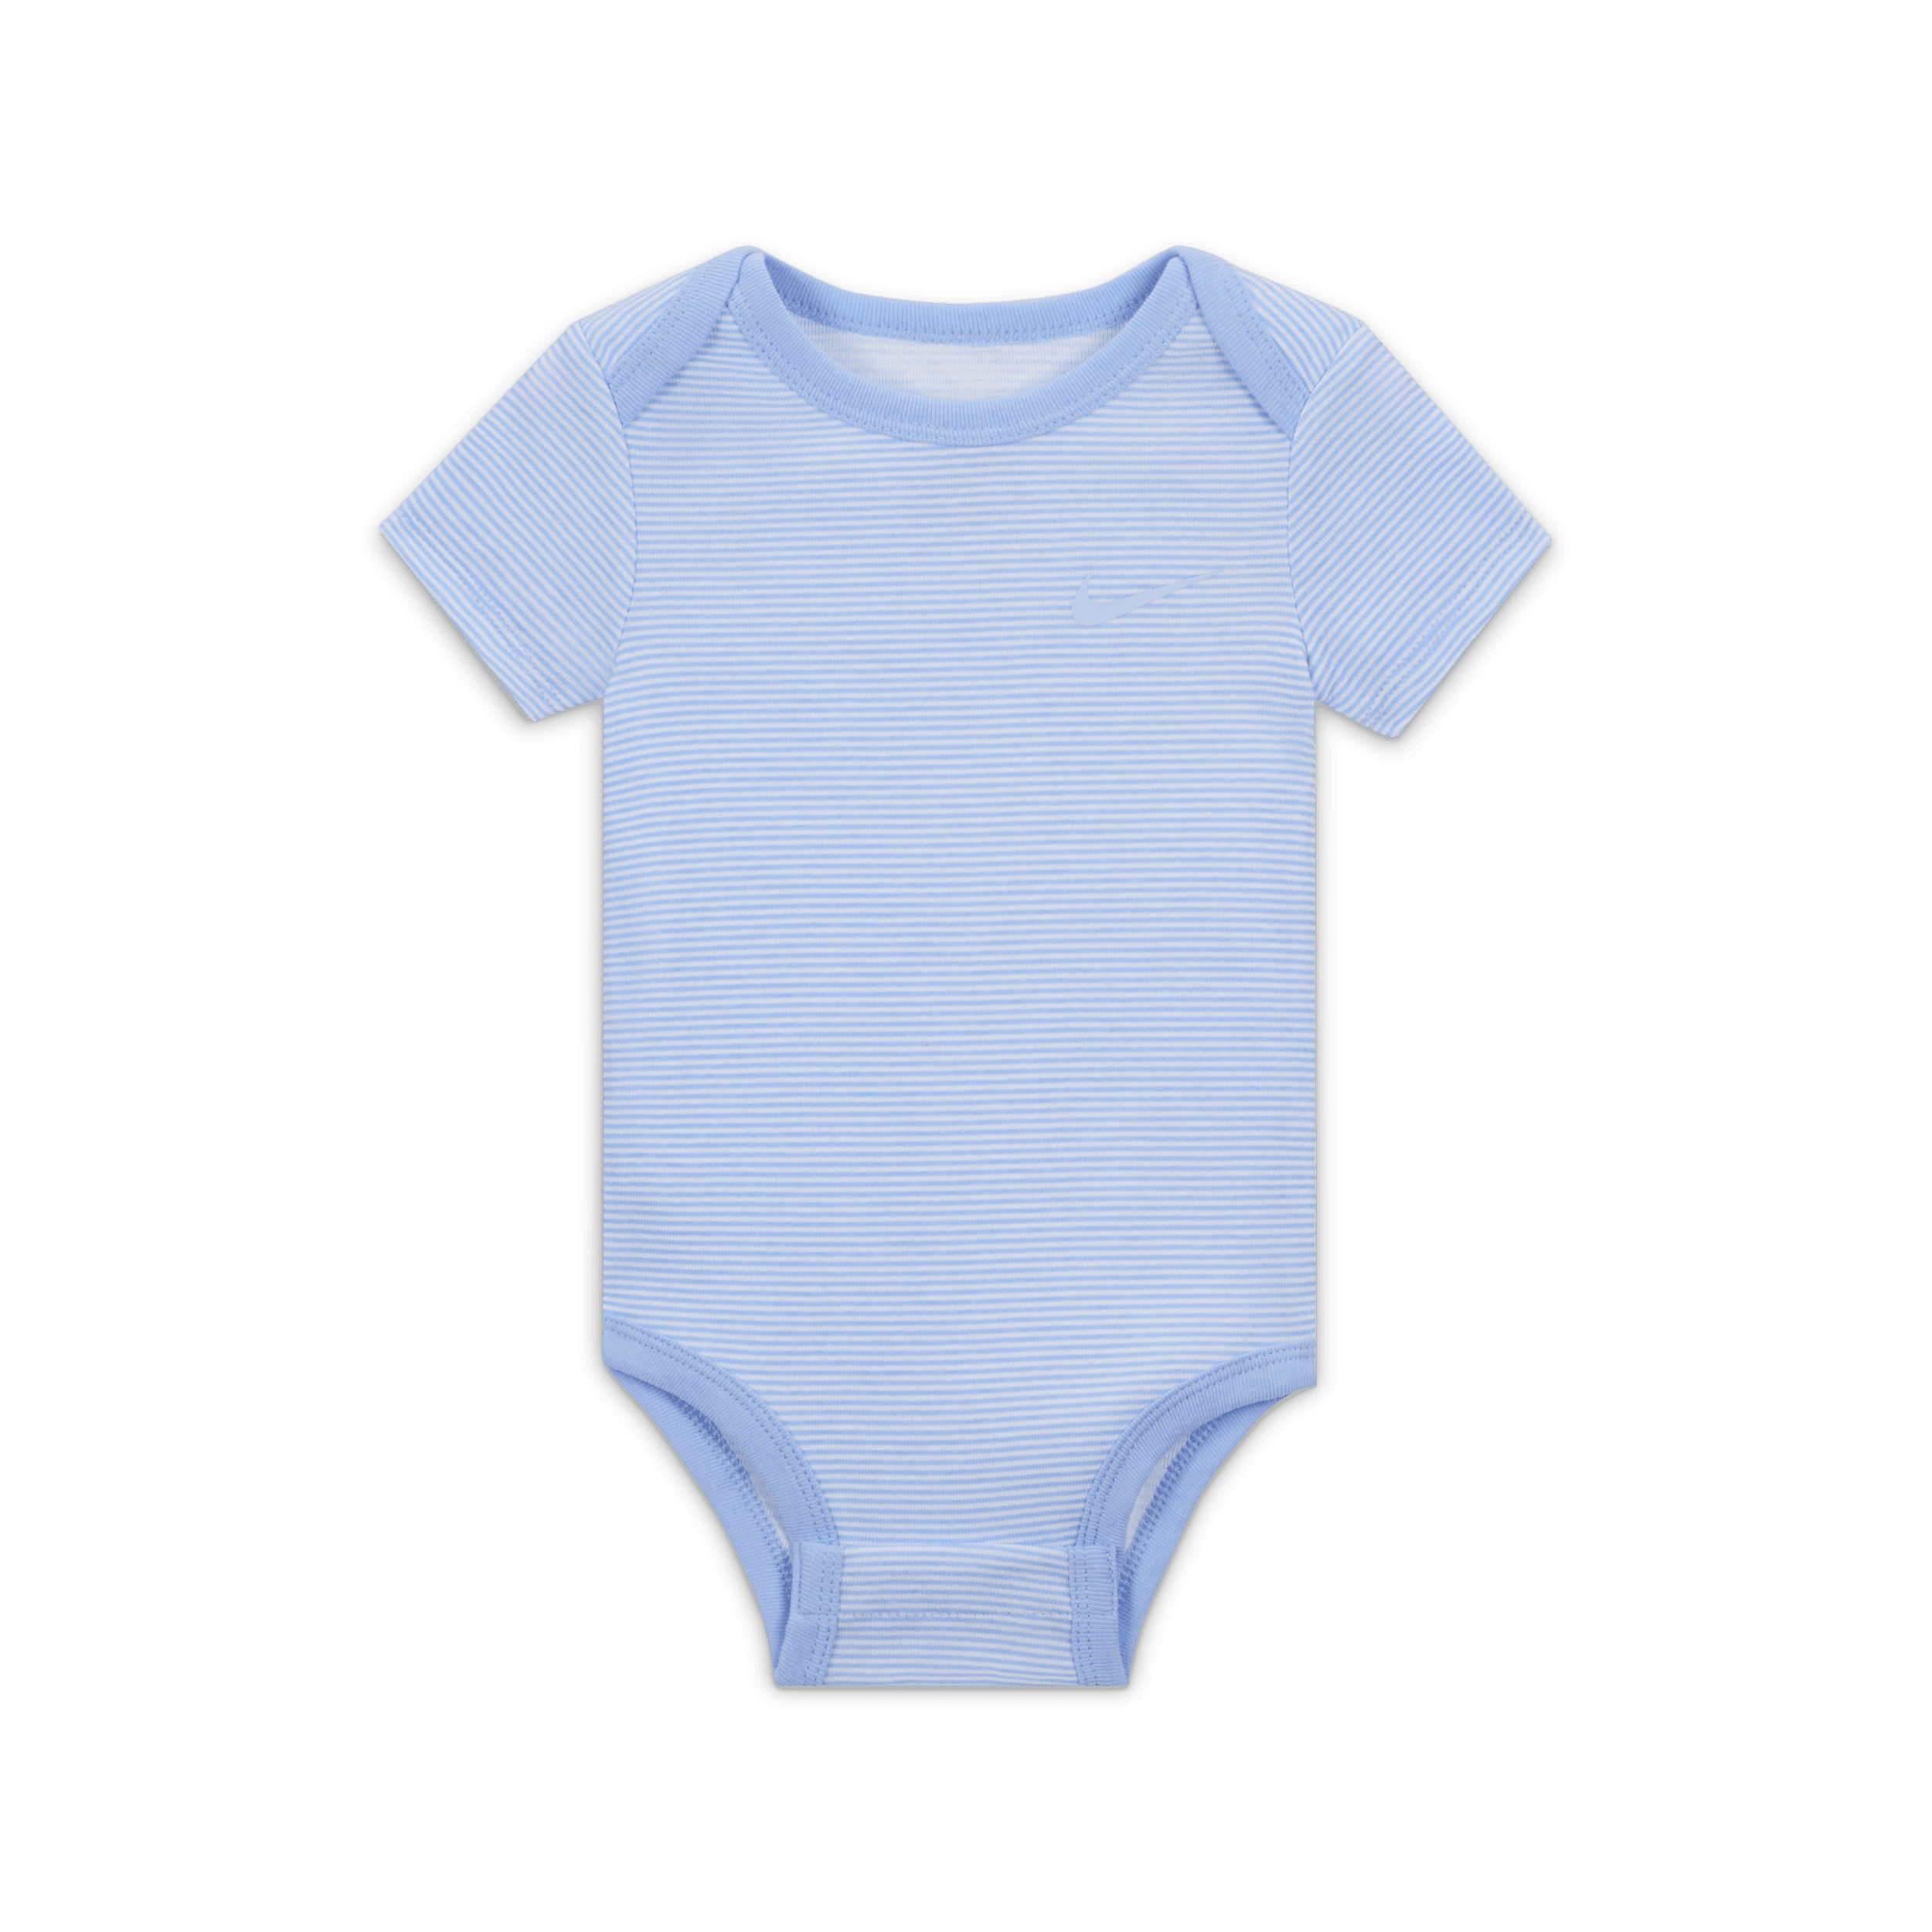 Nike Baby Essentials rompertjes voor baby's (0-9 maanden 3 stuks) Blauw